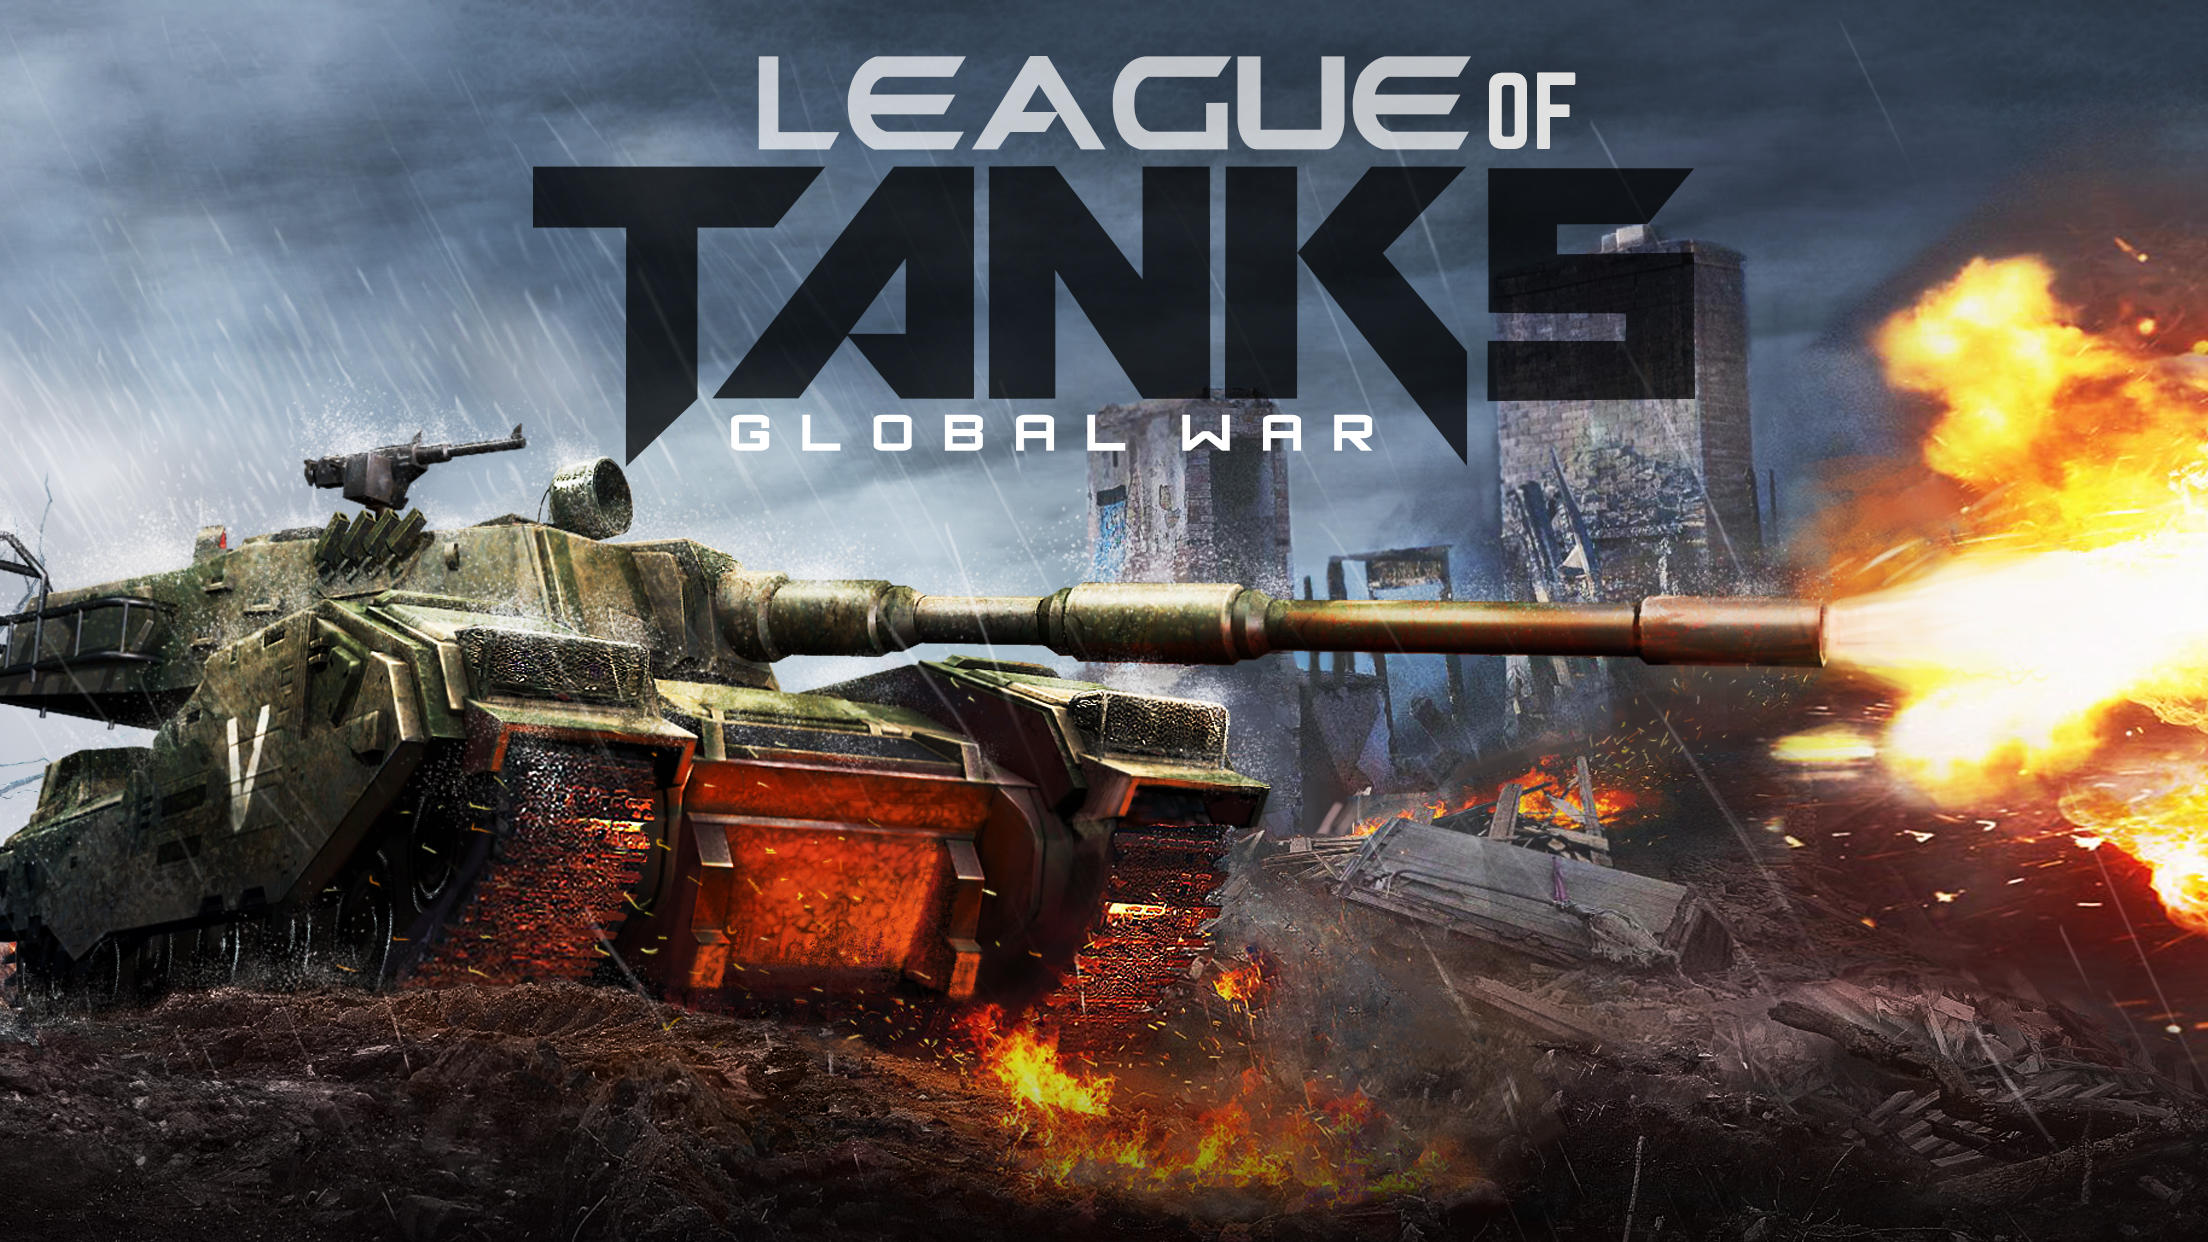 Screenshot 1 of Guerra global de la liga de tanques 